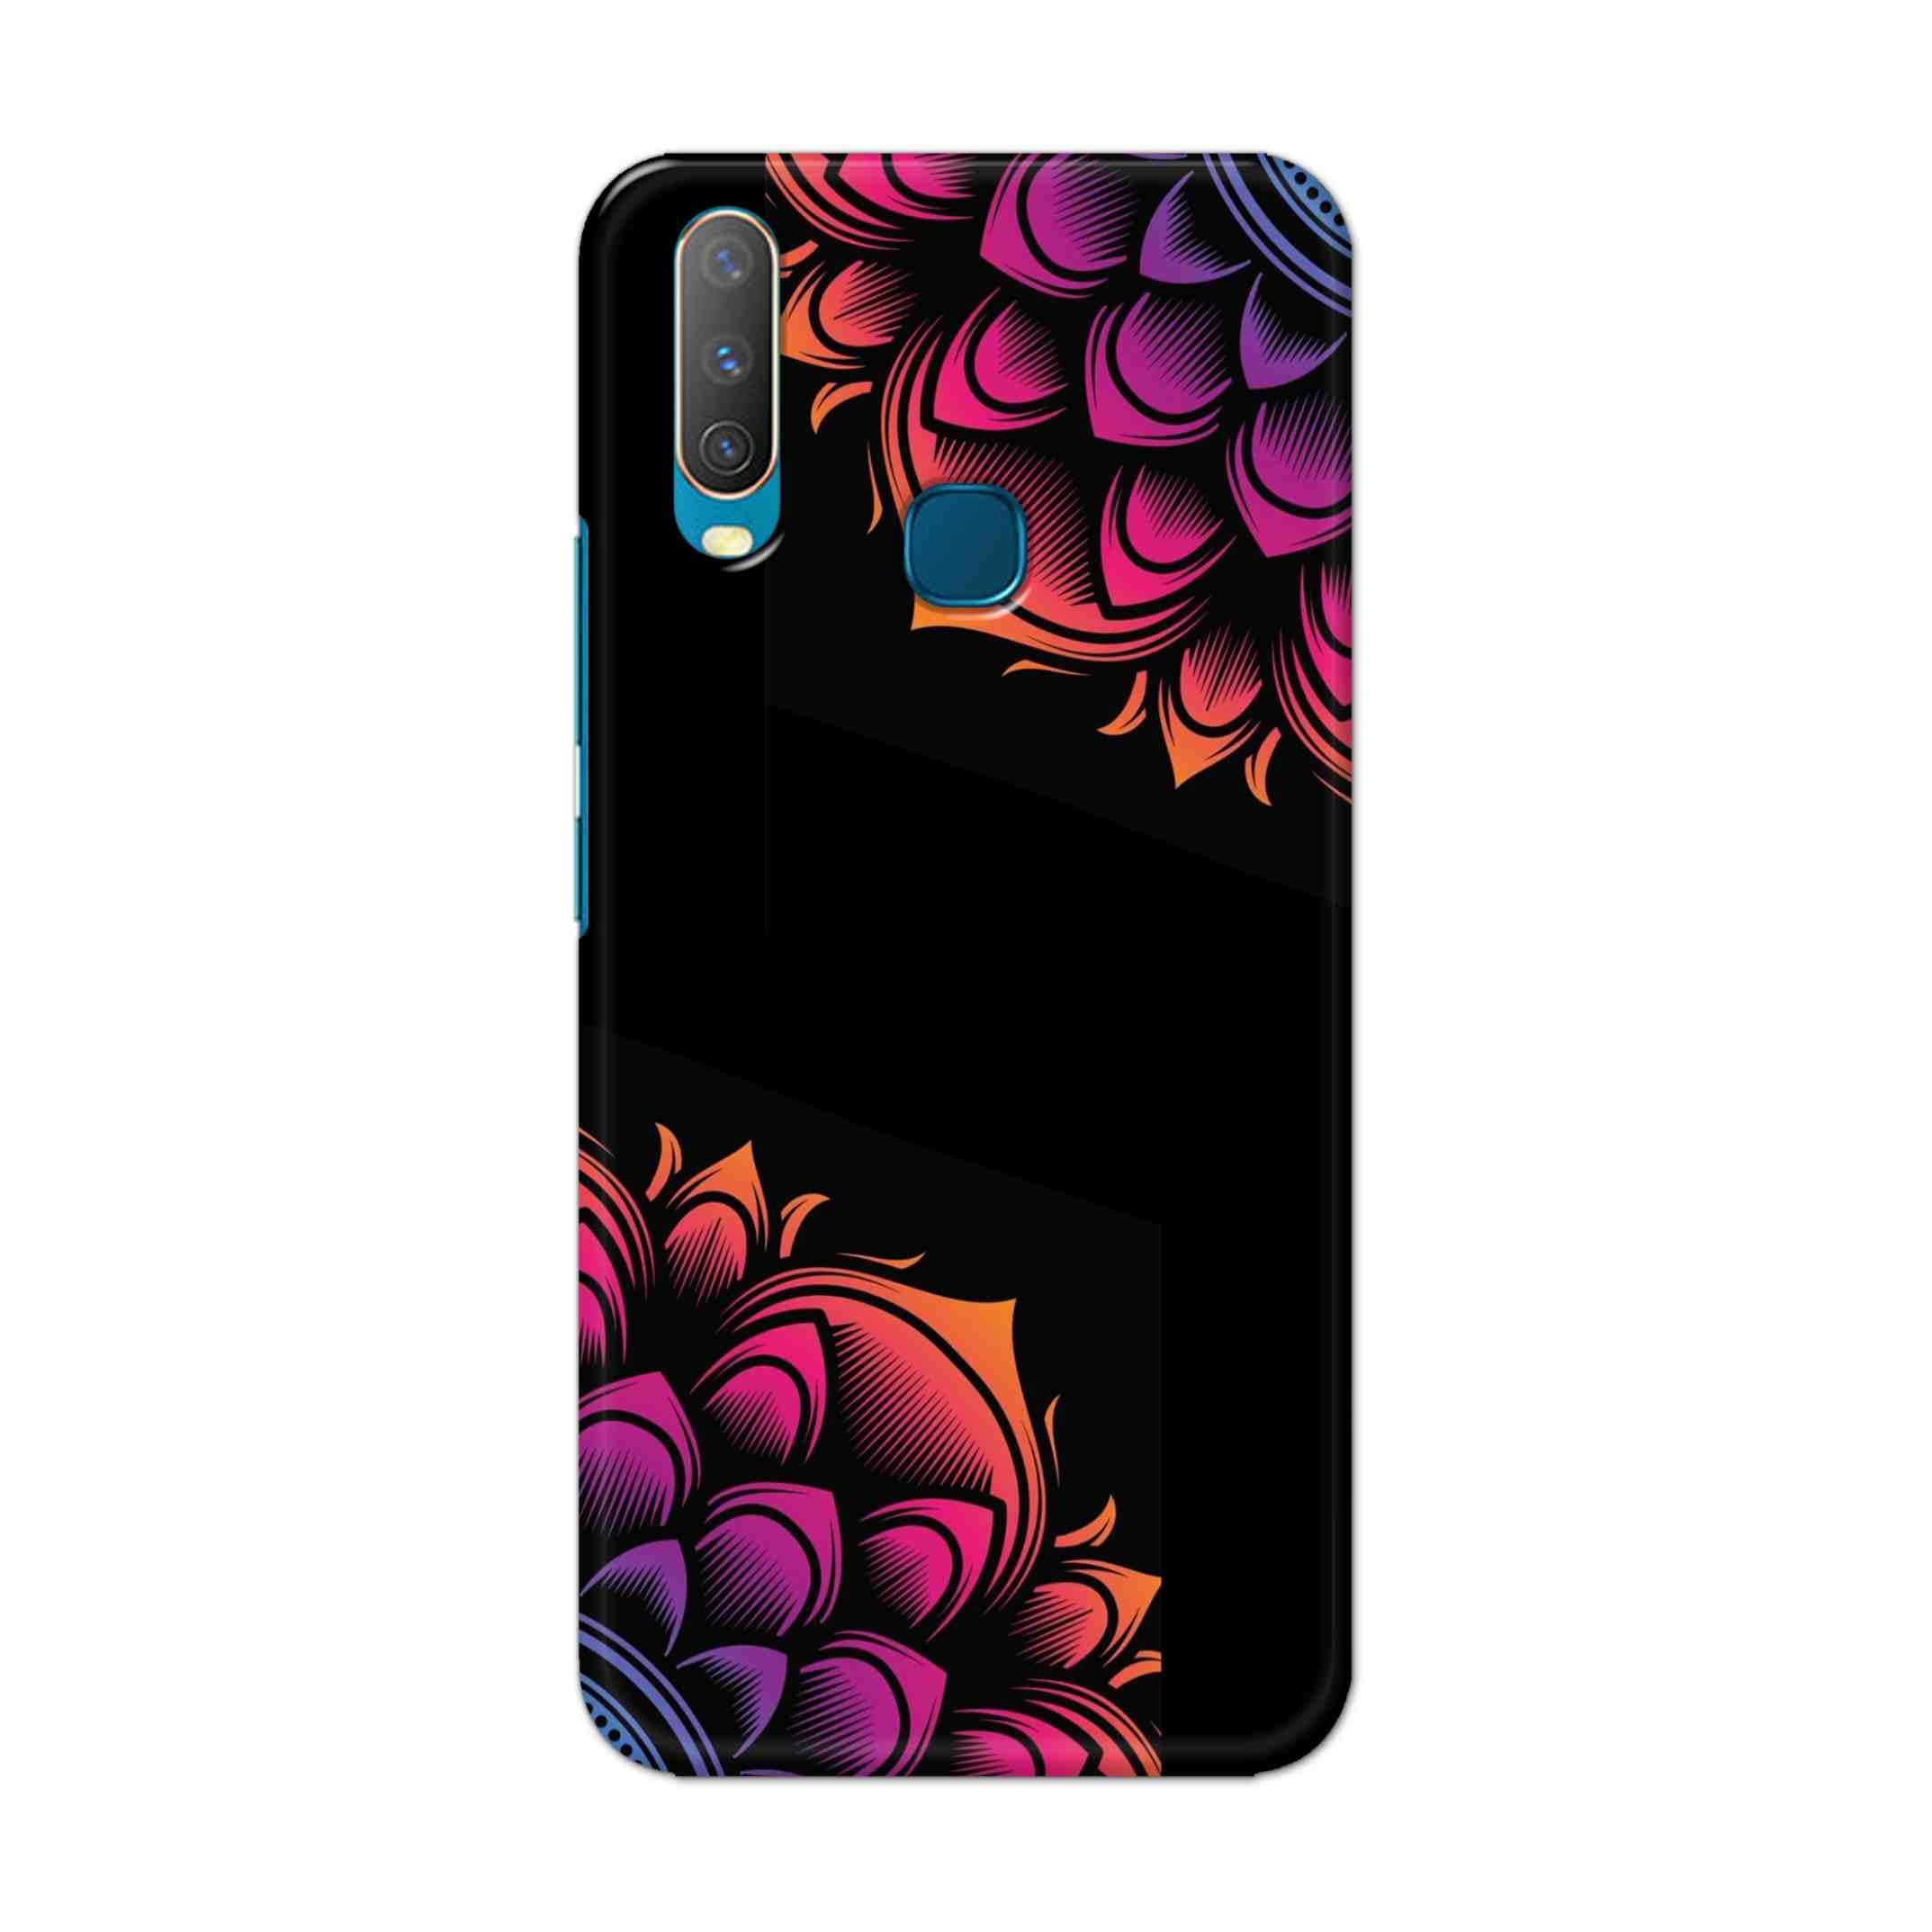 Buy Mandala Hard Back Mobile Phone Case Cover For Vivo Y17 / U10 Online